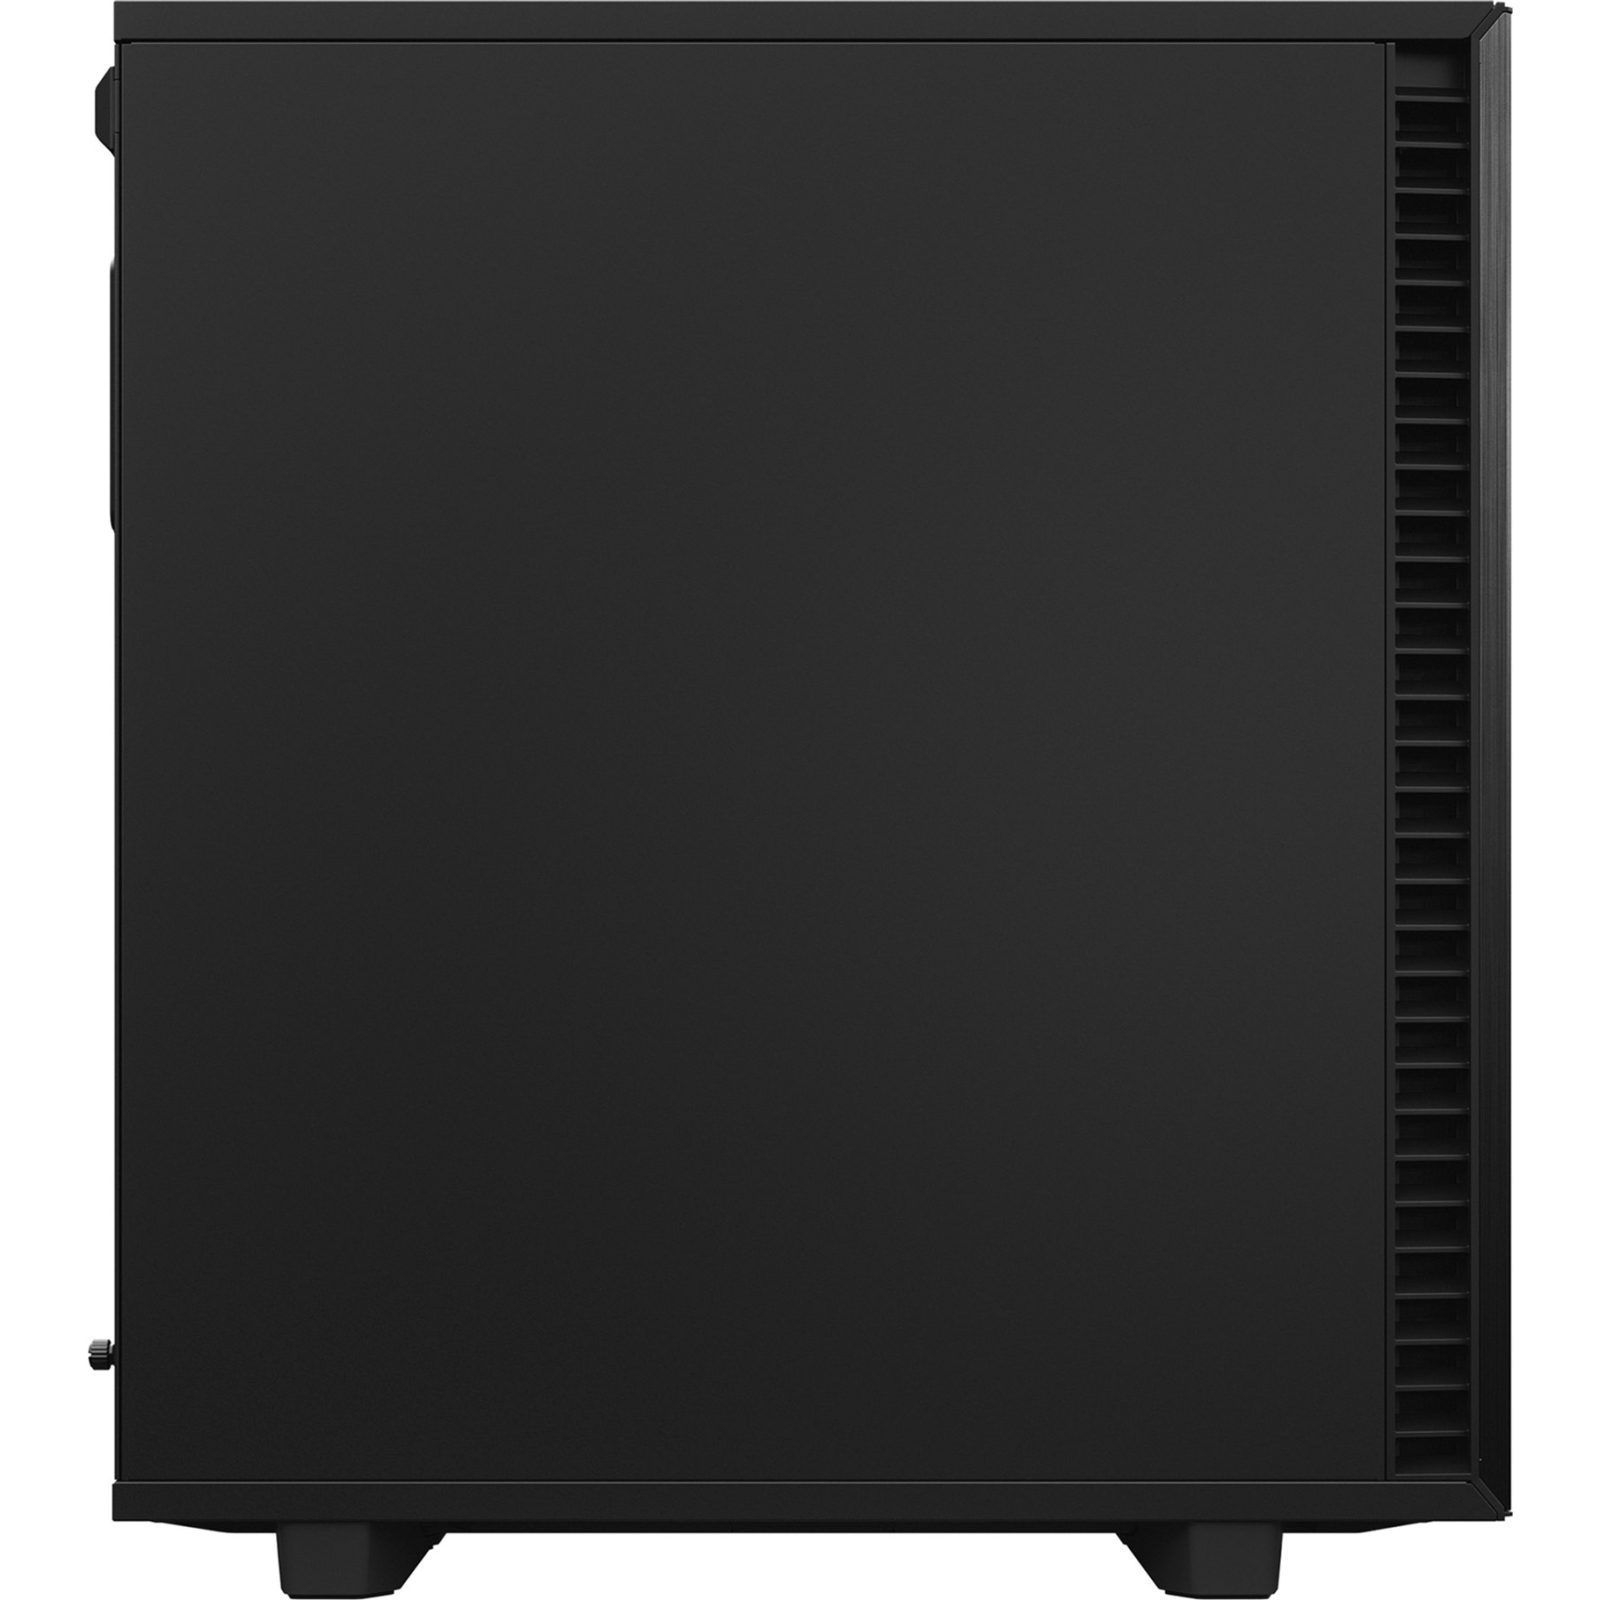 Корпус Fractal Design Define 7 Compact Black (FD-C-DEF7C-01) изображение 8